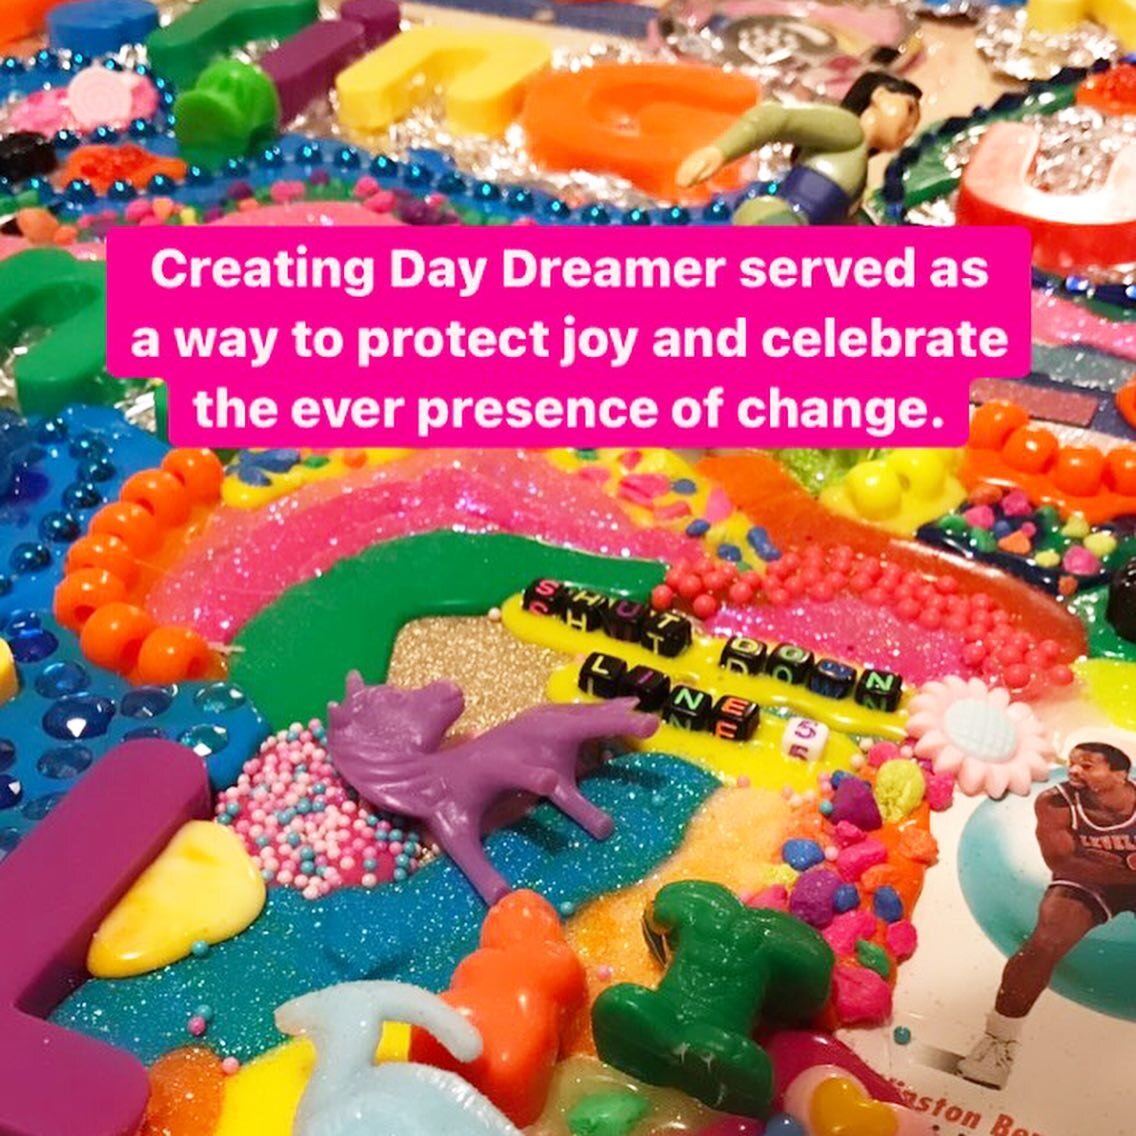 My artist statement for &ldquo;Day Dreamer.&rdquo; Opening reception August 6 at Hammond Regional Arts Center. 

#art #abstractart #assemblage #makersgonnamake #makersofinstagram #artistsoninstagram